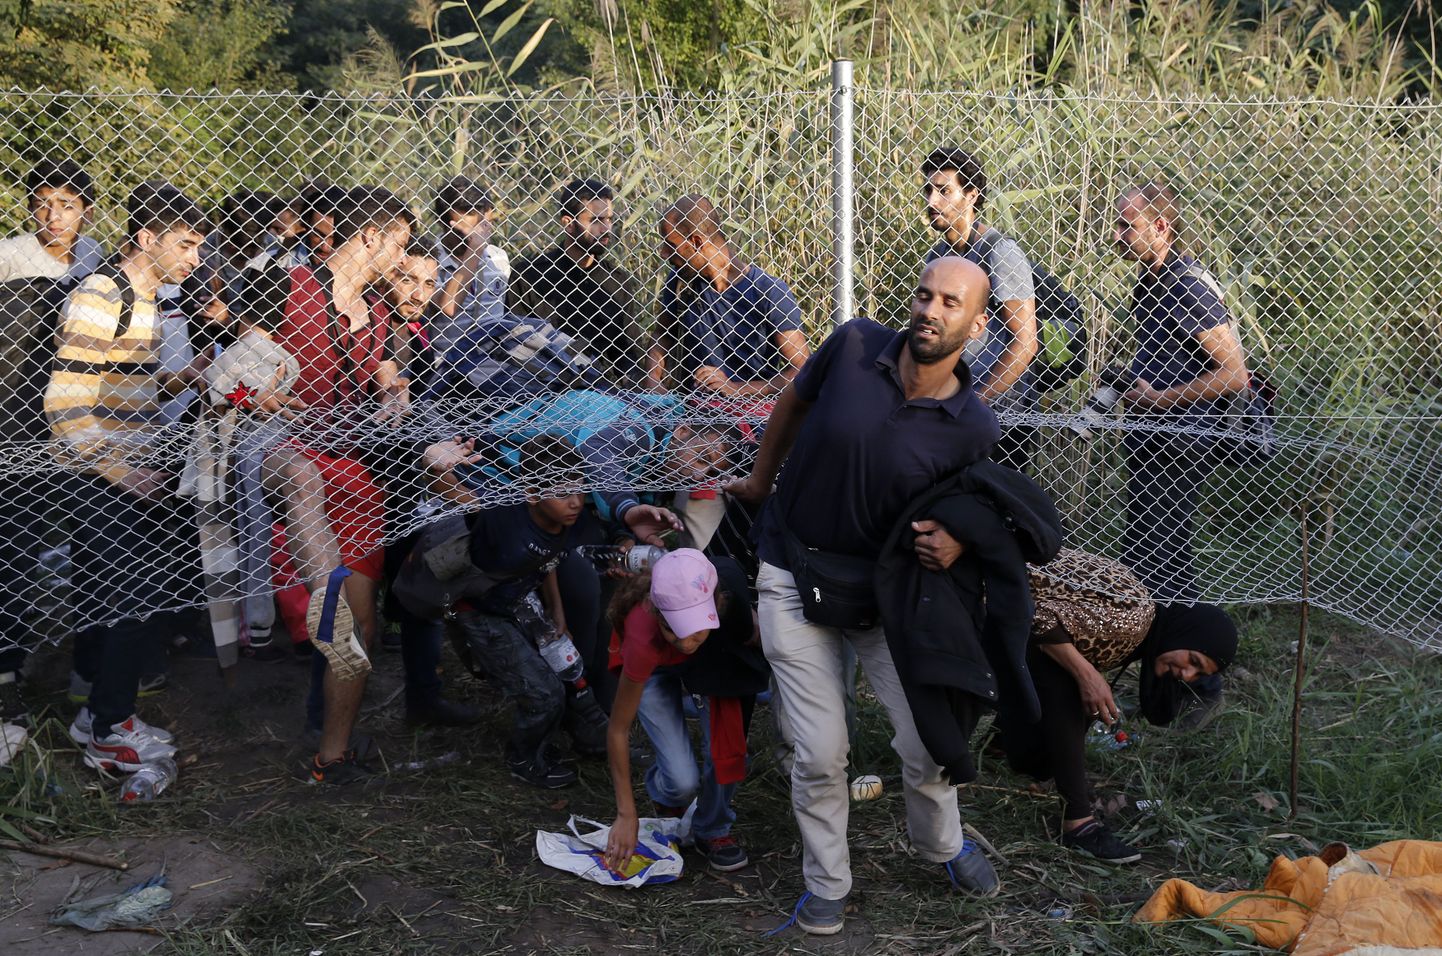 Migrandid Serbia-Ungari piiril